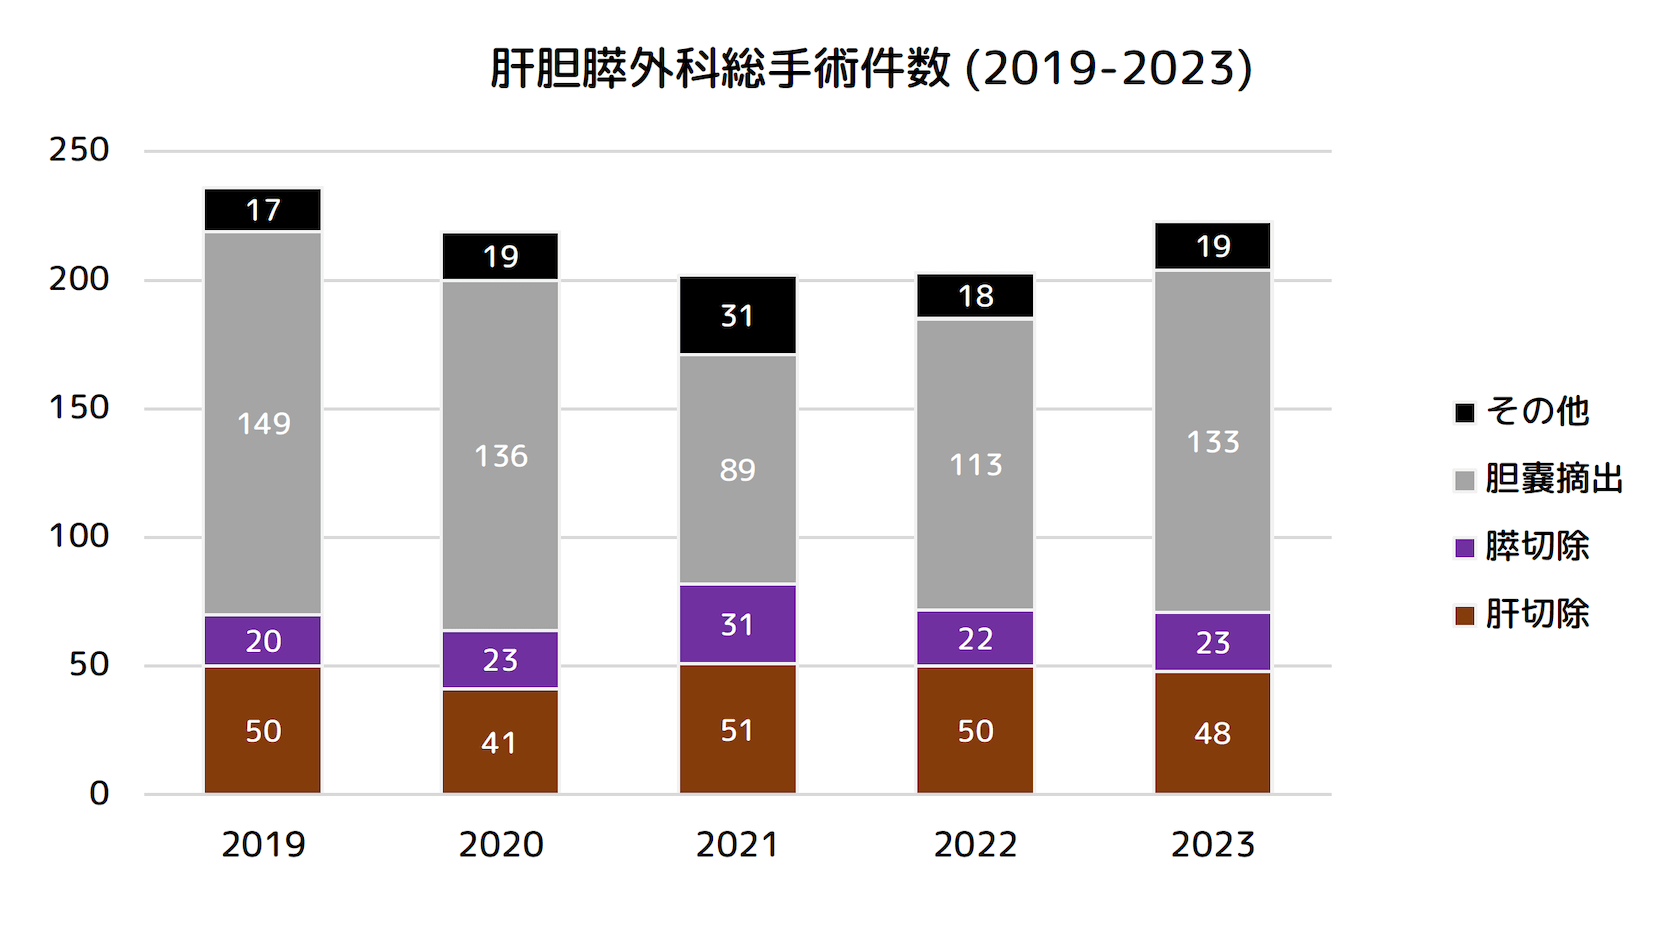 肝胆膵外科総手術件数 (2019-2023)